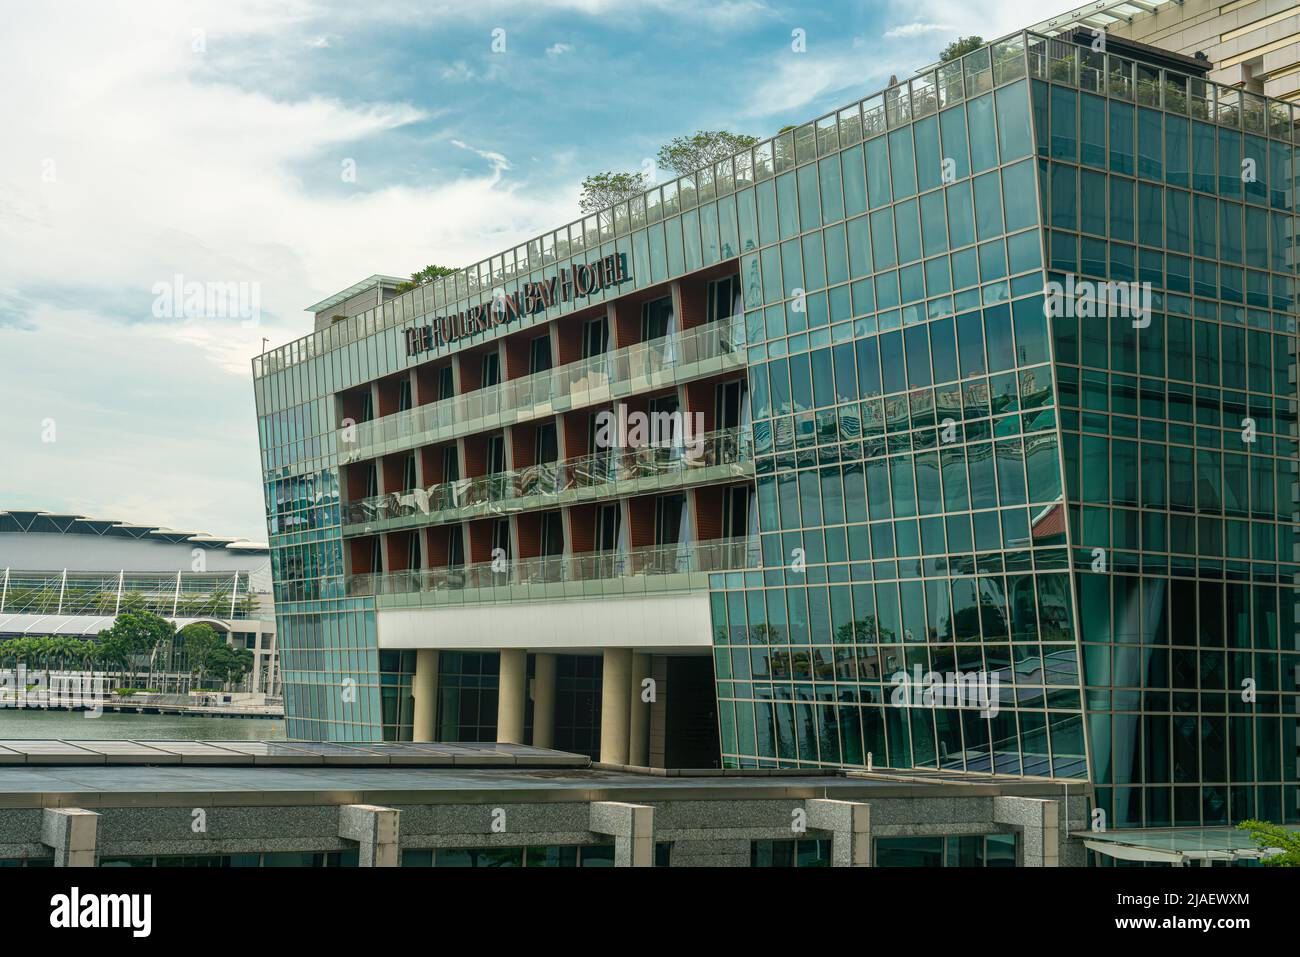 Singapur, Singapur - 8. Juli 2020: Hotel mit grünen Glasfenstern und Balkonen Stockfoto